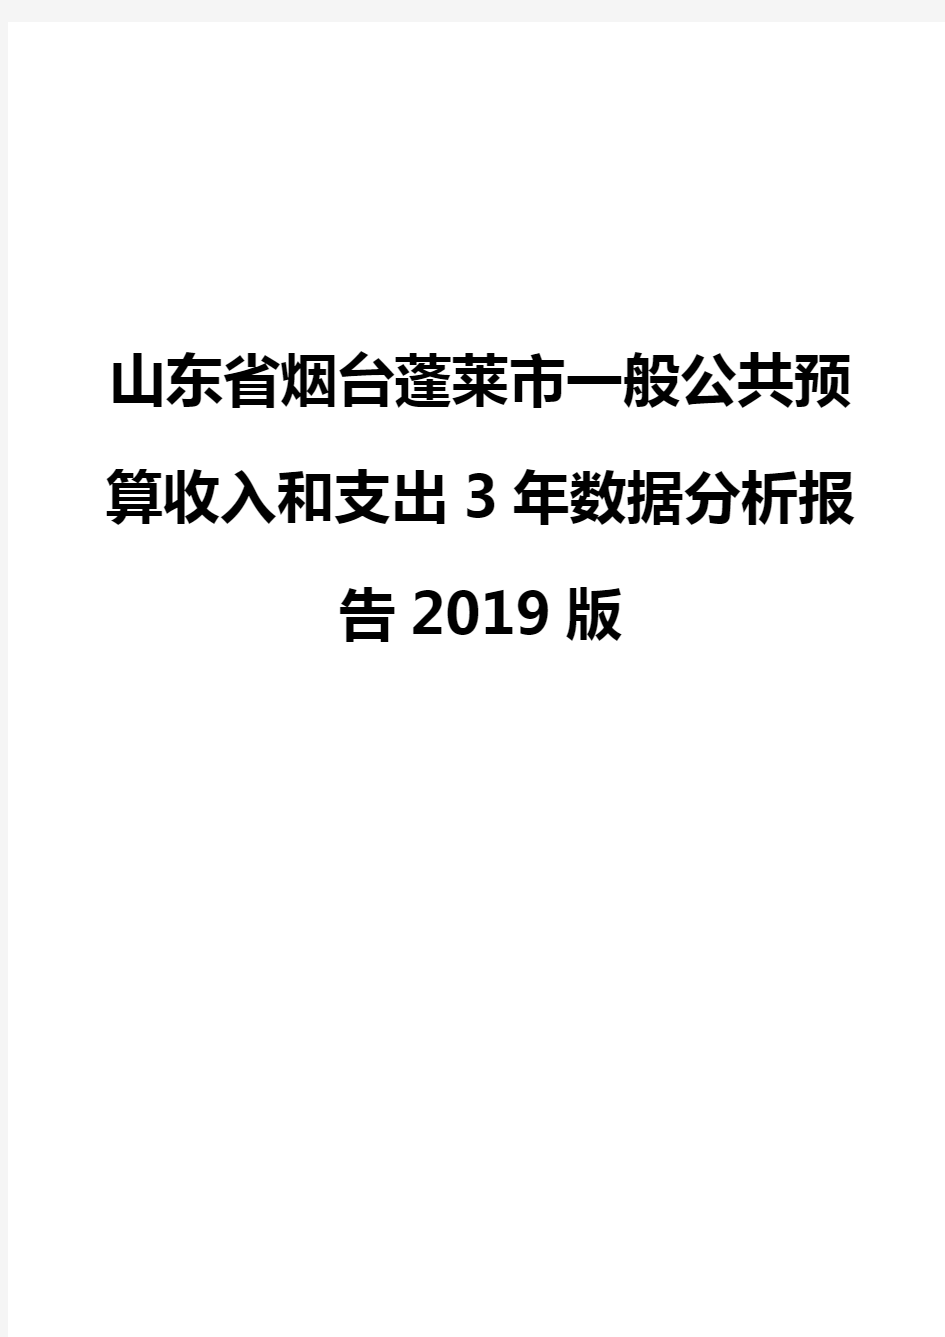 山东省烟台蓬莱市一般公共预算收入和支出3年数据分析报告2019版